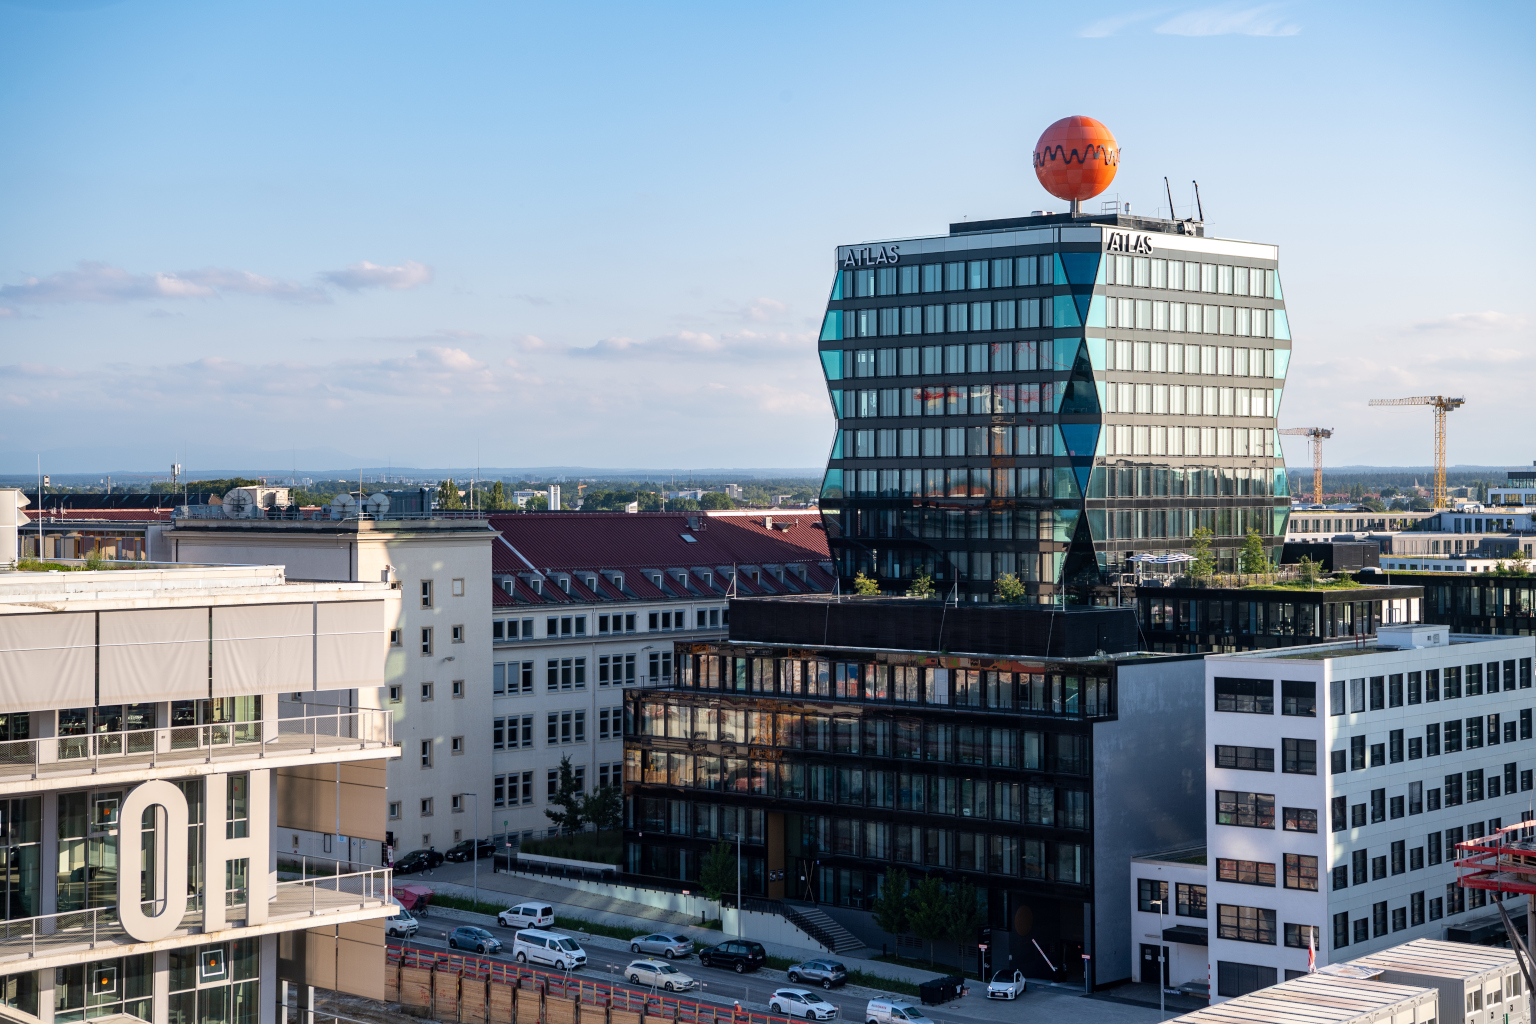 Blick auf neue Gebäude im Münchner Werksviertel, das Atlas Hochhaus mit der orangenen Kugel auf dem Dach und das Werk 12